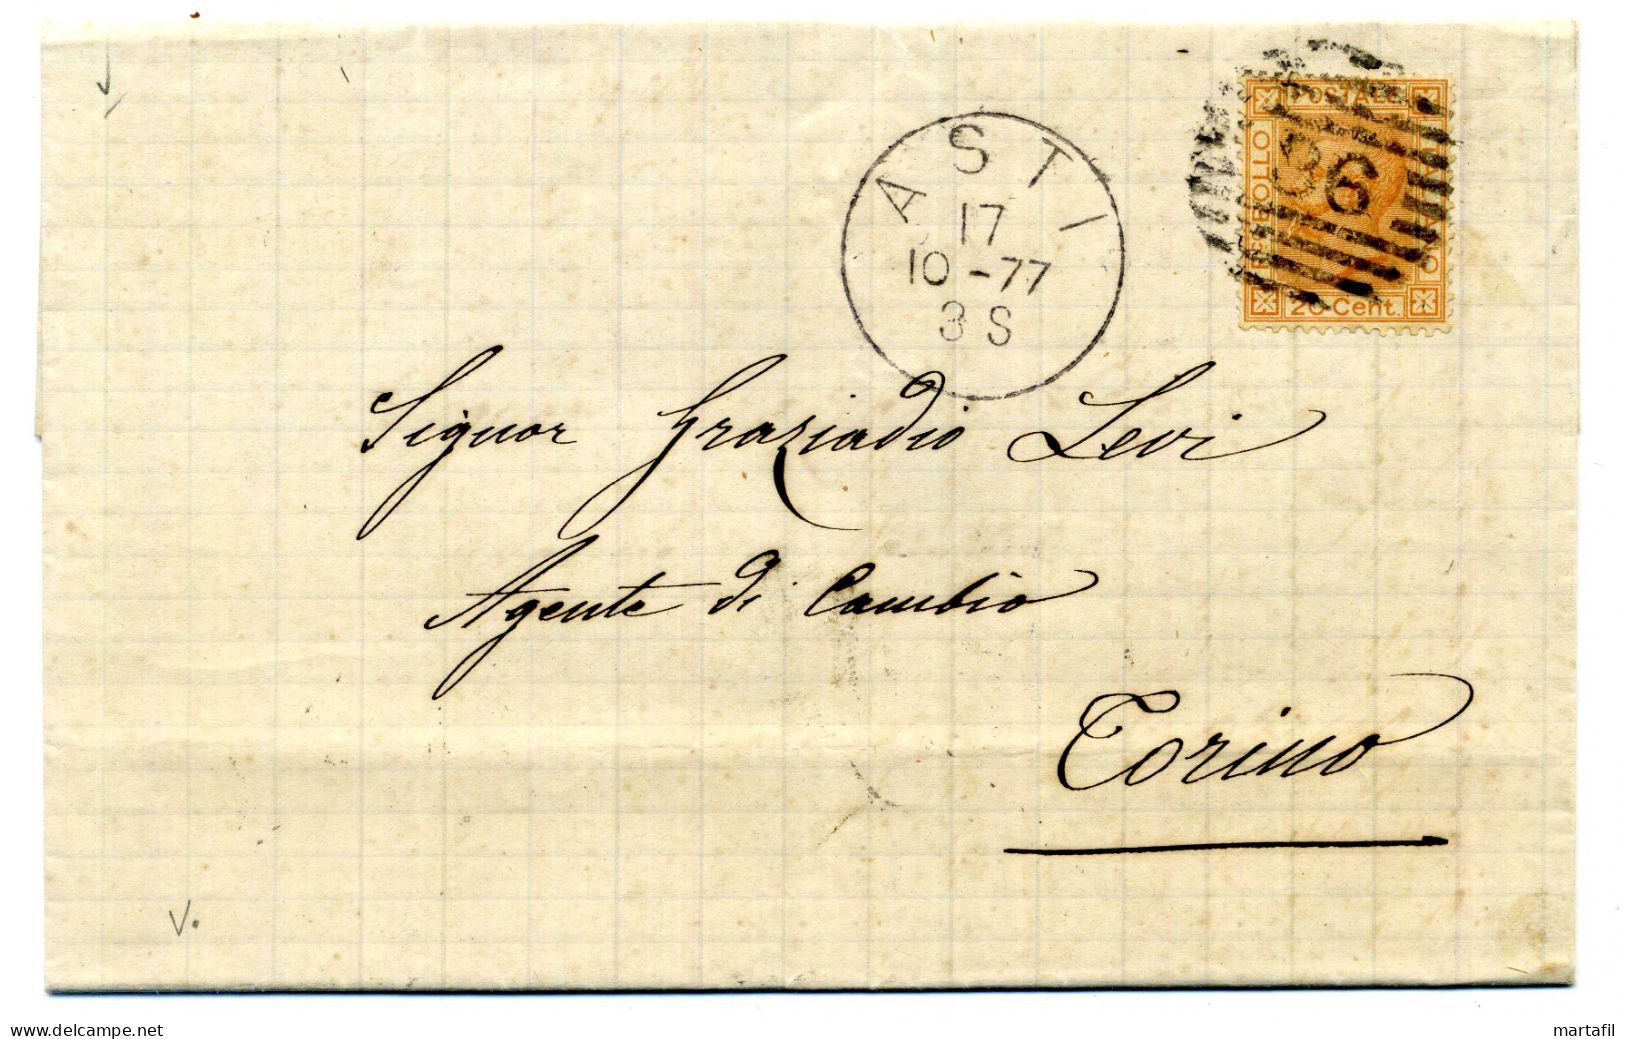 1877 Lettera Per Torino Da Asti, Affr. 20 Cent. - Storia Postale